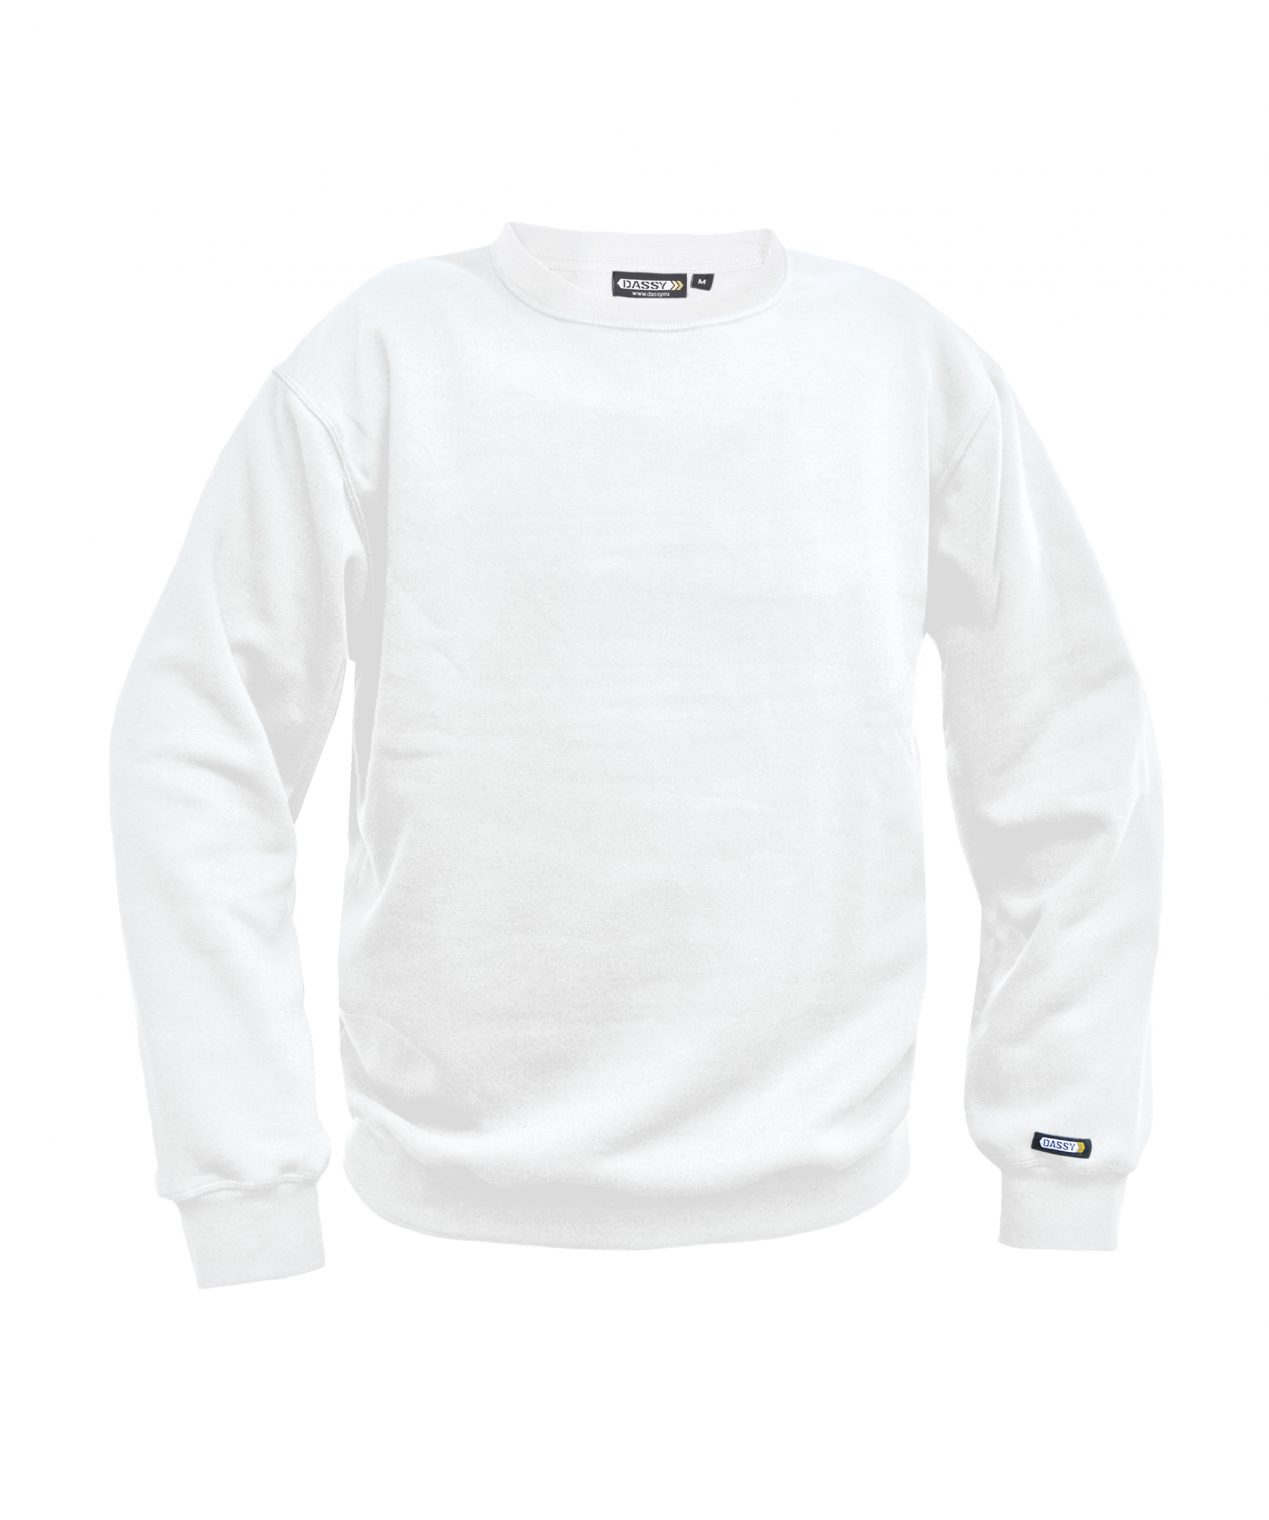 lionel sweatshirt white front